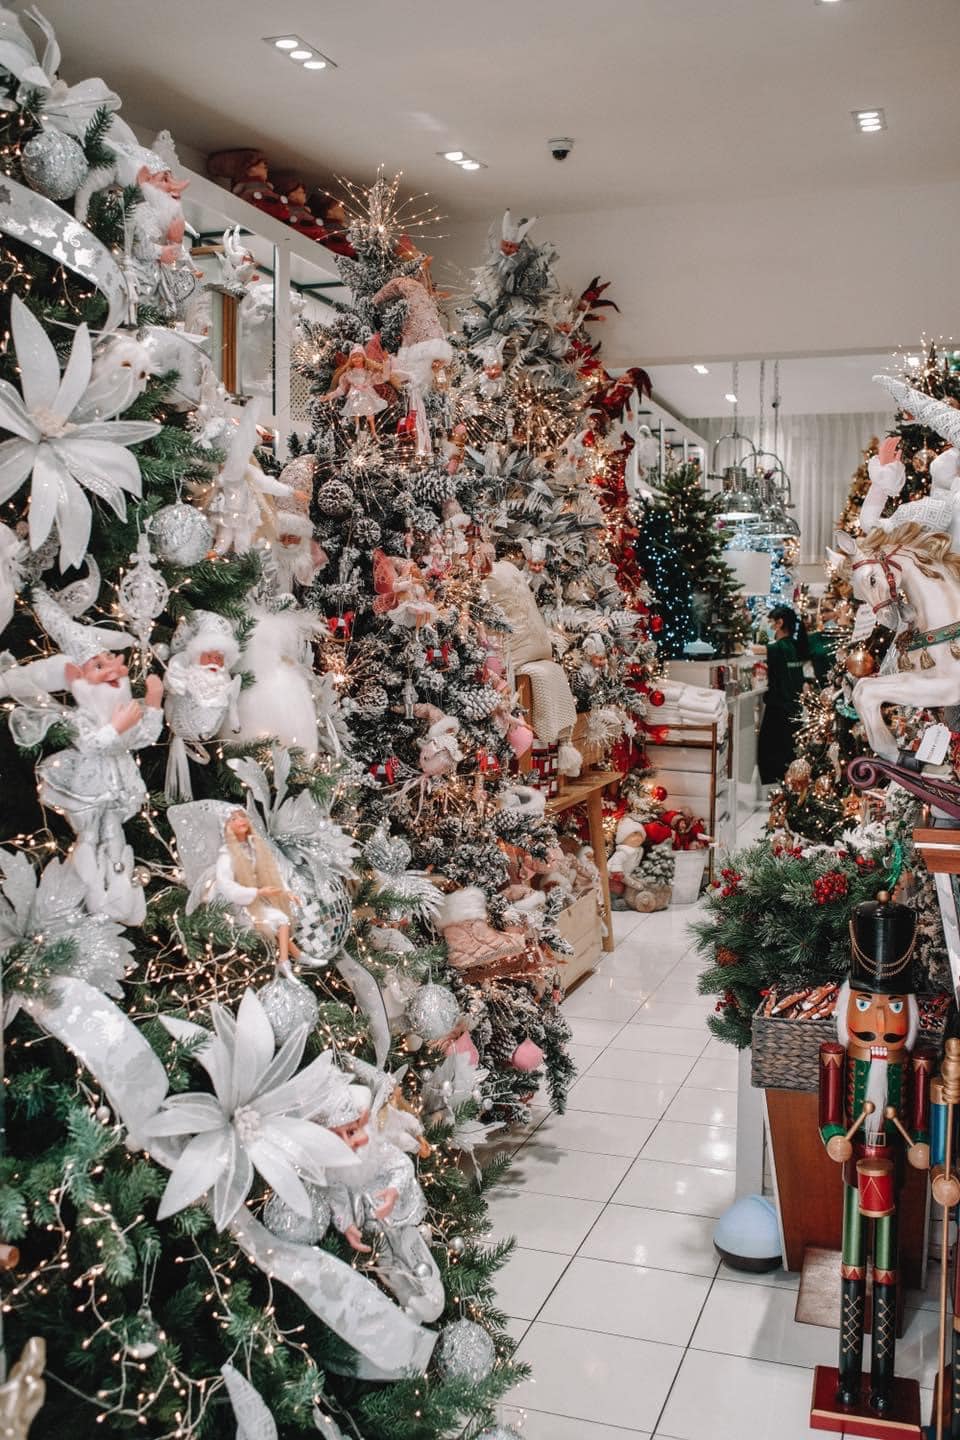 Tận hưởng không khí lễ hội Noel với những sản phẩm trang trí tuyệt vời từ cửa hàng trực tuyến. Họ có hơn 1000 lựa chọn tuyệt đẹp cho bạn chọn, từ cây thông Noel cho đến những chiếc bóng quyến rũ để thêm sắc màu cho ngôi nhà của bạn.